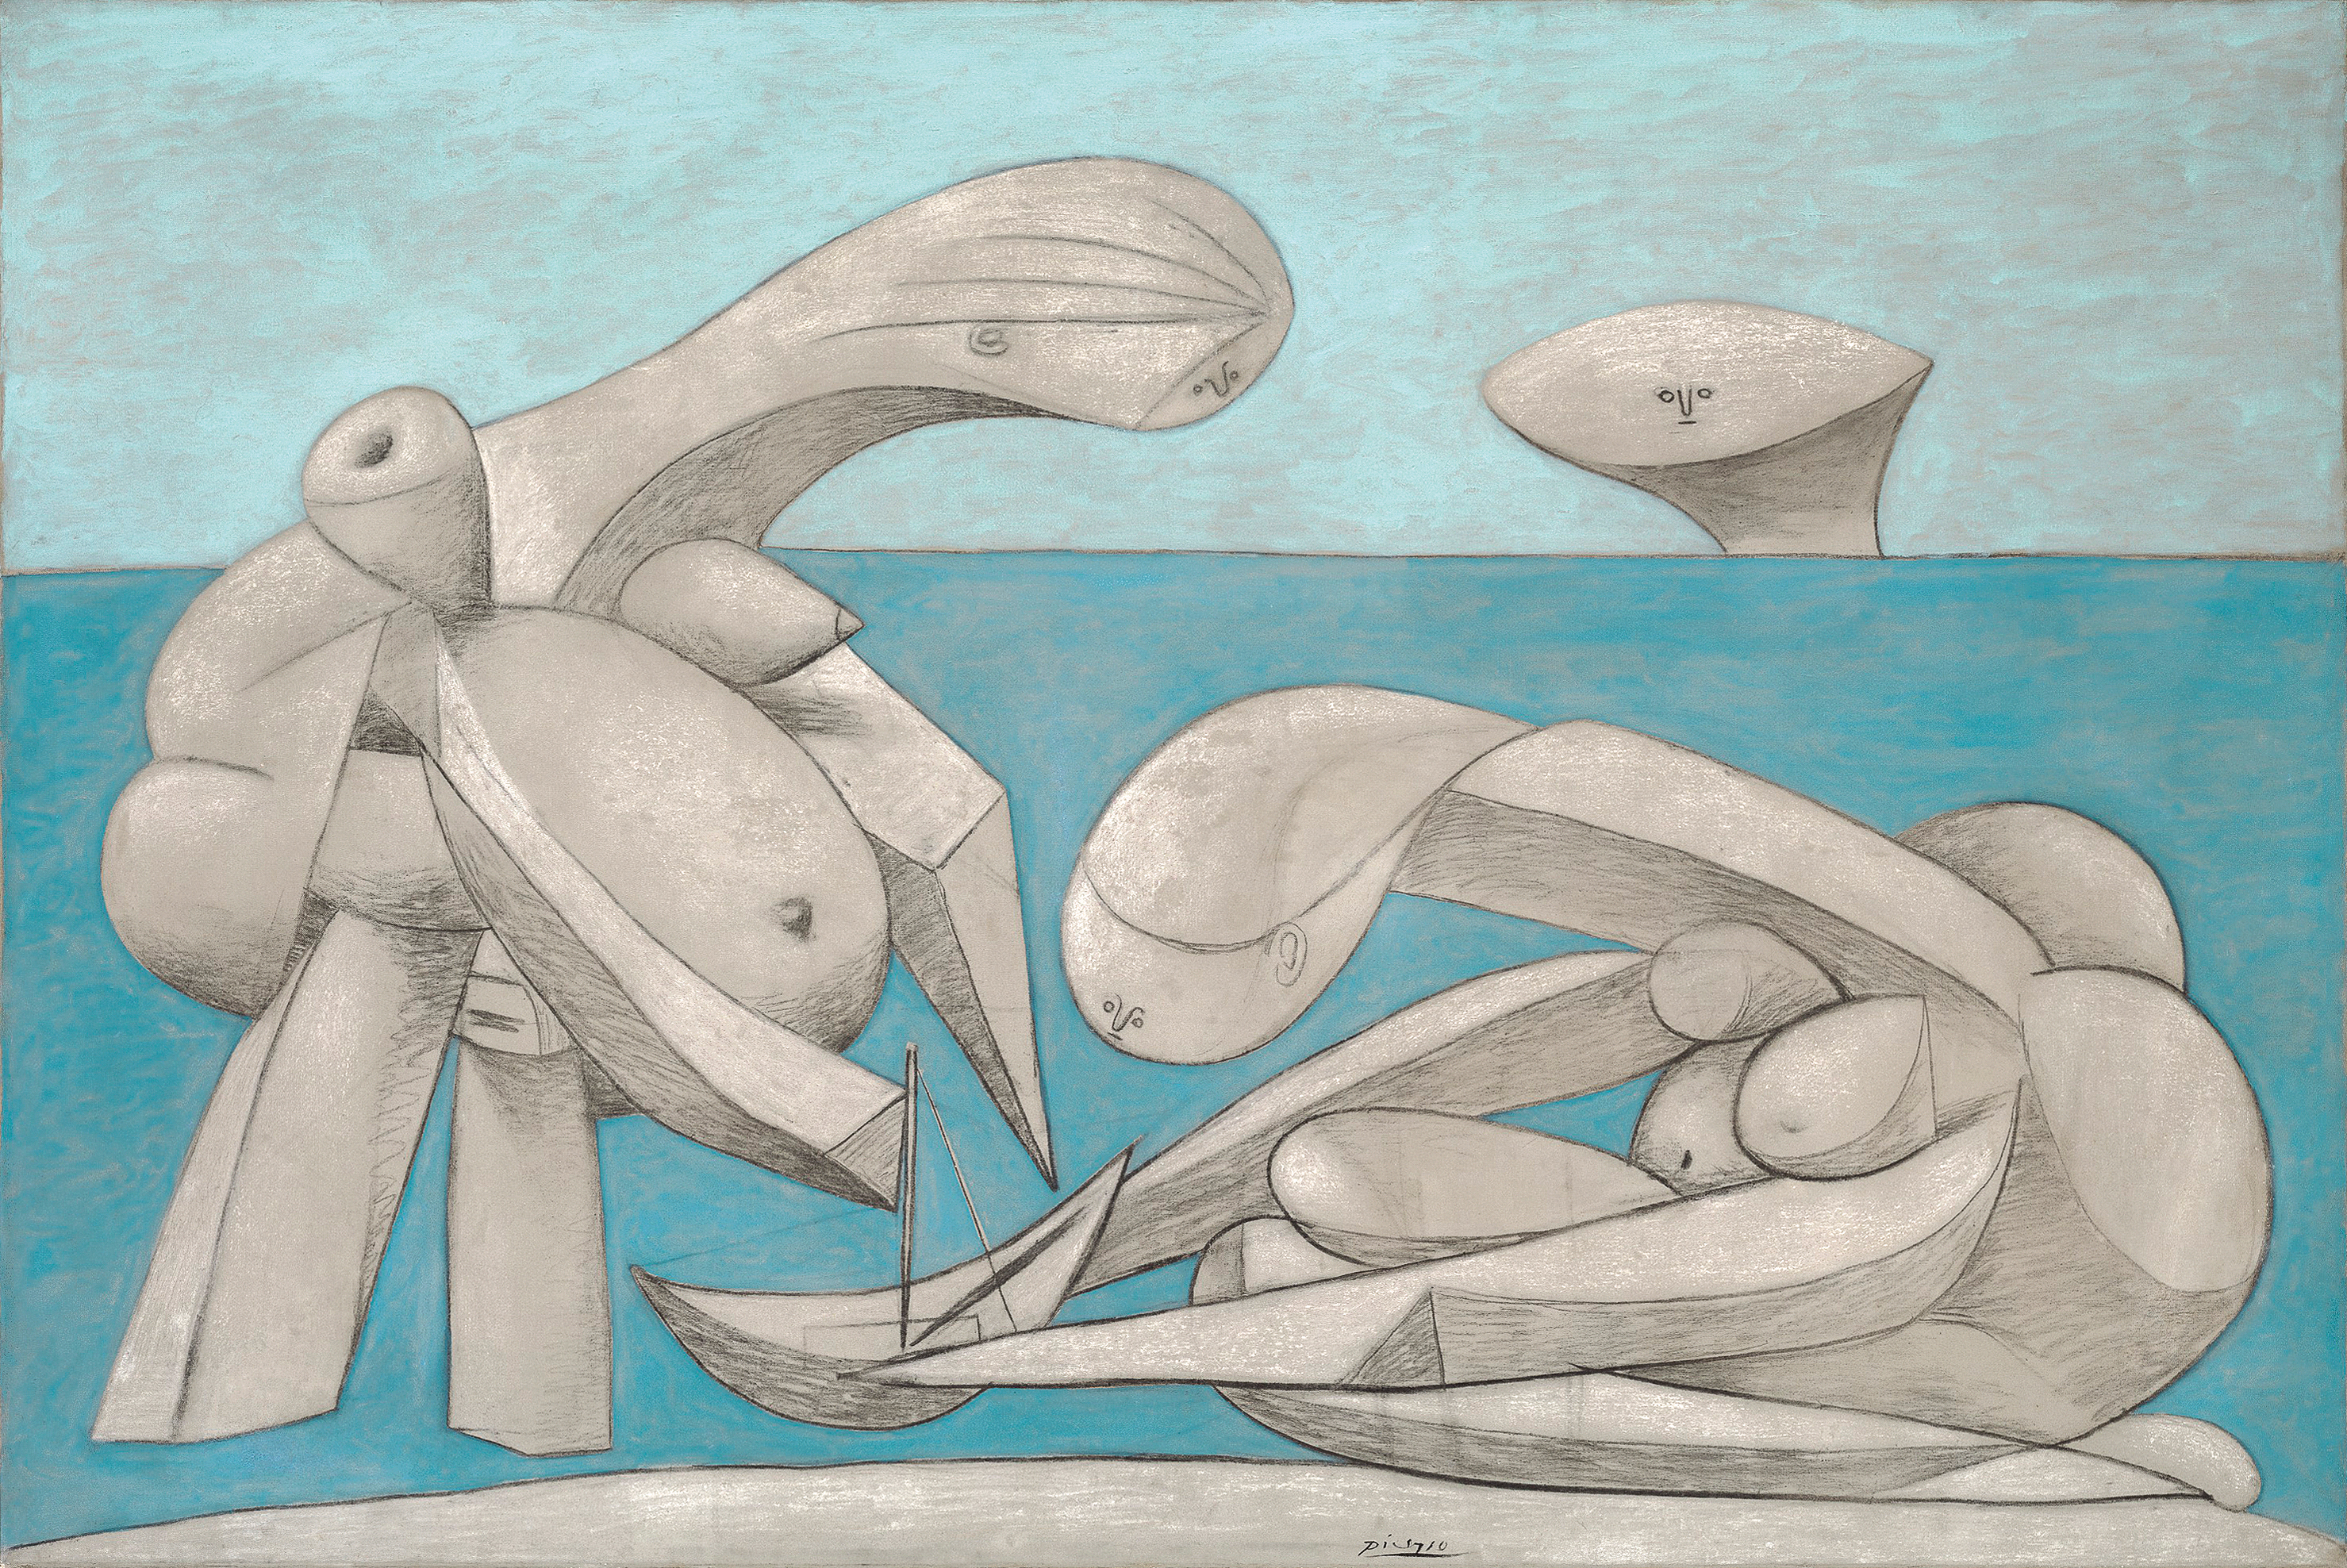 Pablo Picasso, Sulla spiaggia (La Baignade), 12 febbraio 1937, olio, conté e gesso su tela, 129,1 x 194 cm. Collezione Peggy Guggenheim, Venezia (Fondazione Solomon R. Guggenheim, New York)